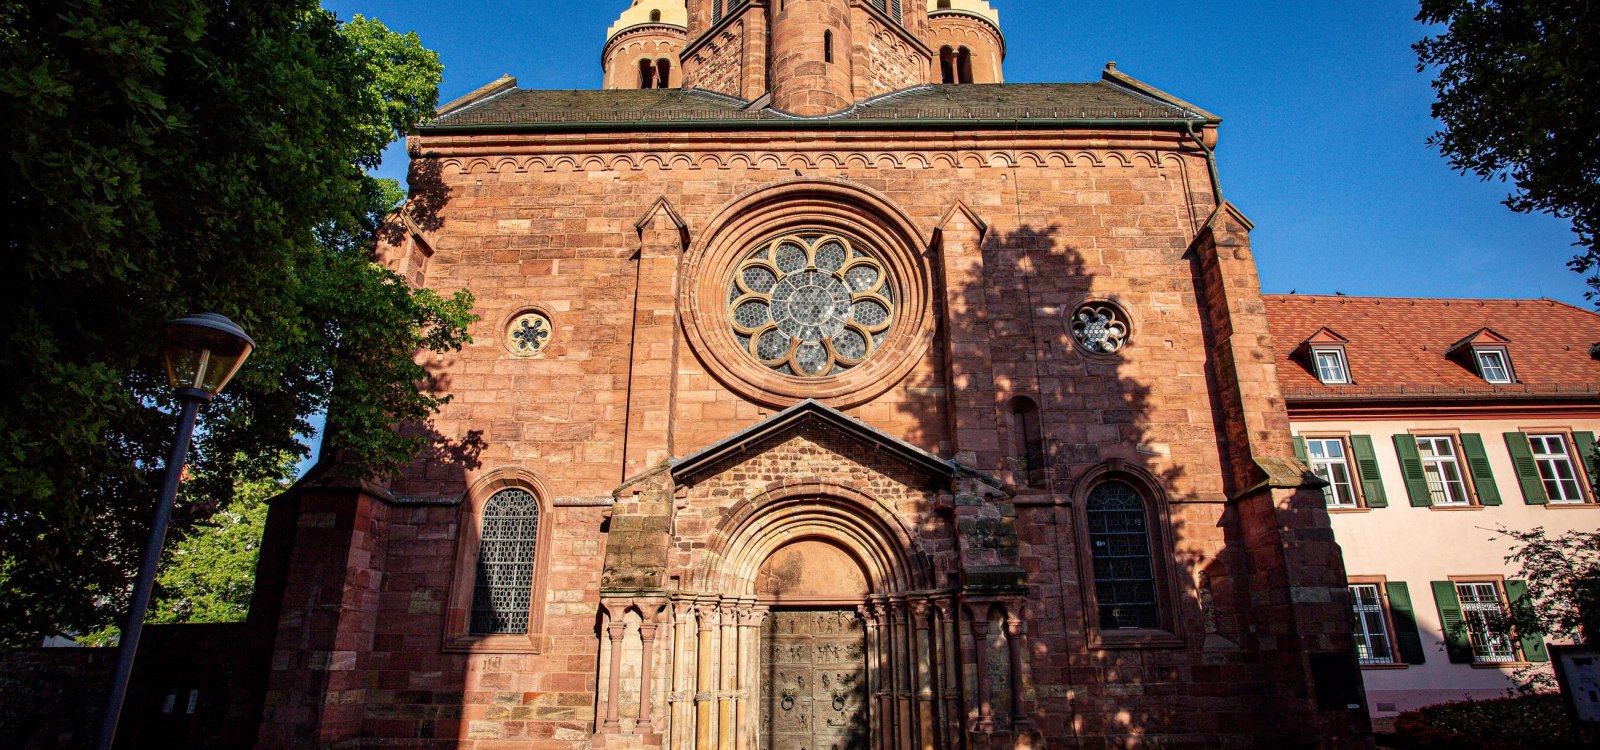 Kirche und Kloster St. Paulaus von außen, © Bernward Bertram